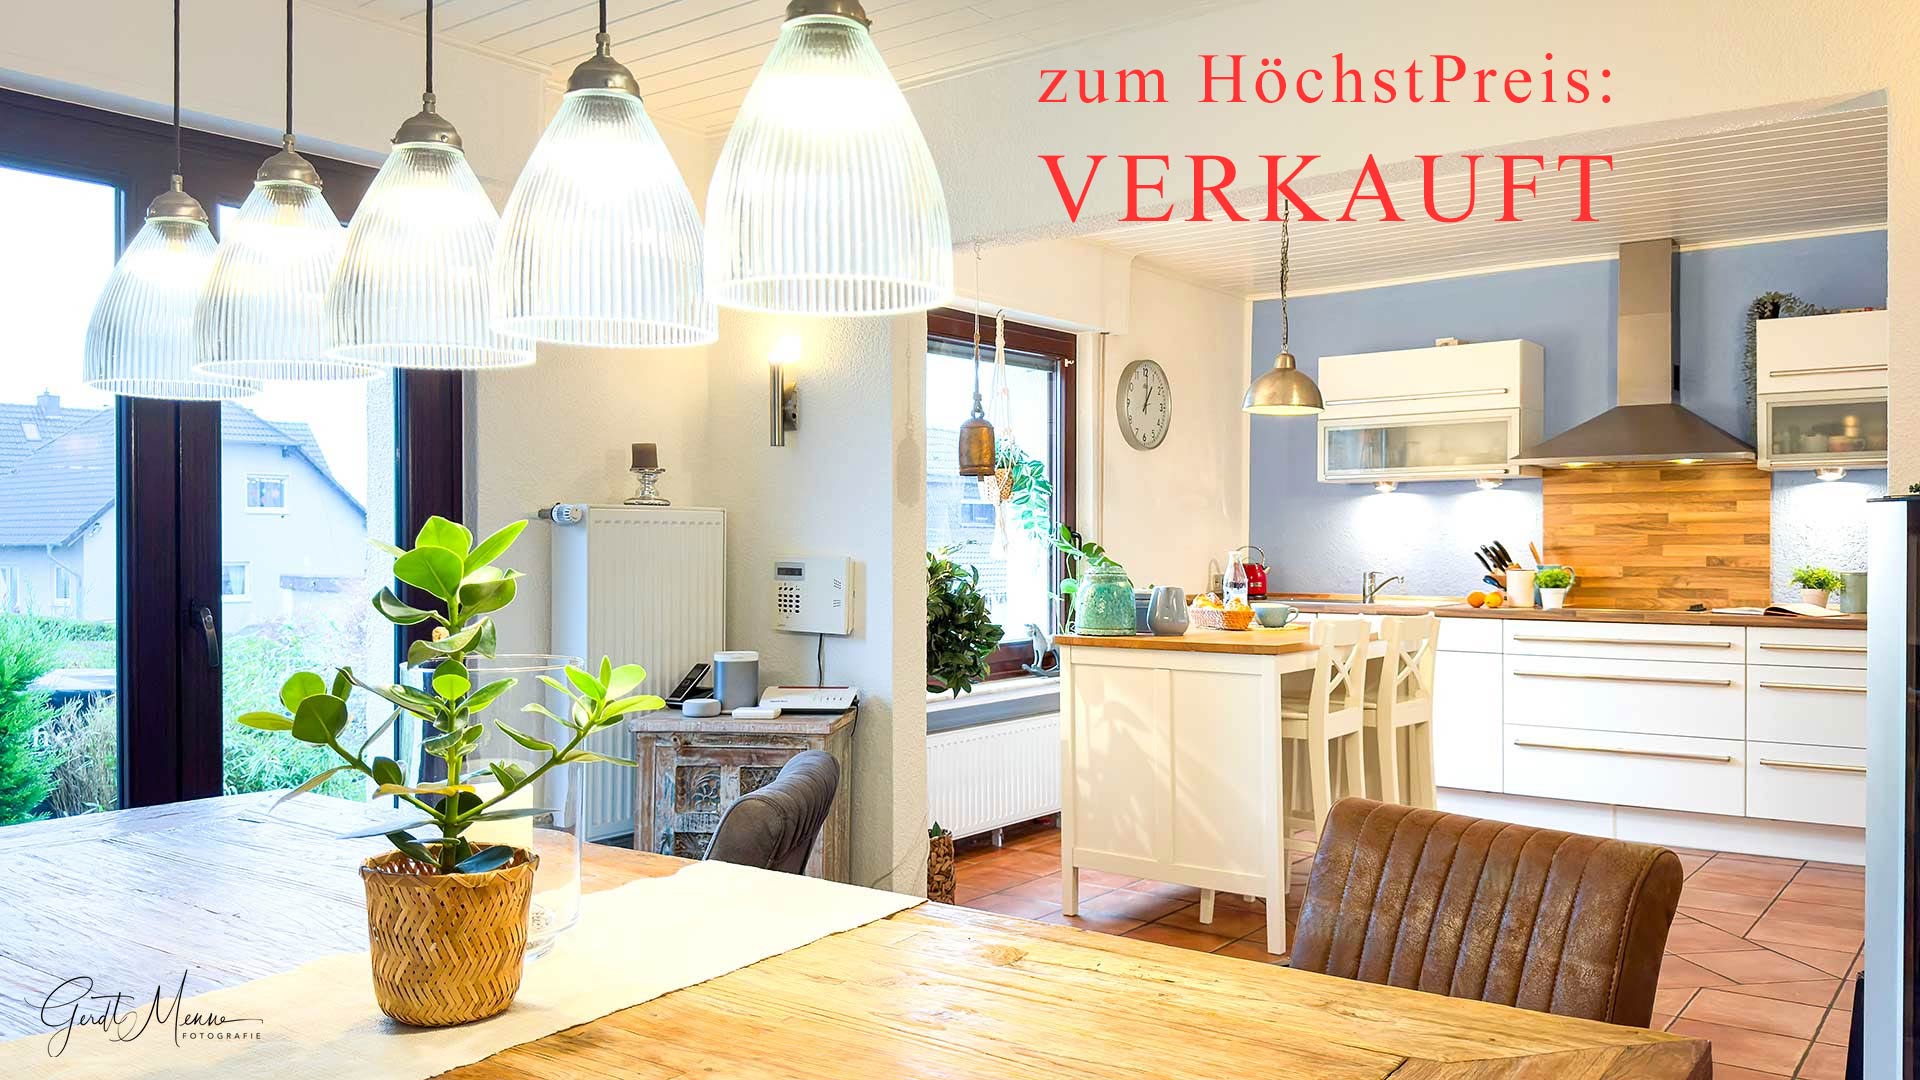 Immobilienmakler-Bochum-Gerdt-Menne-Einfamilienhaus-kaufen-in-Witten-Heven-hier-7a-VERKAUFT-hp